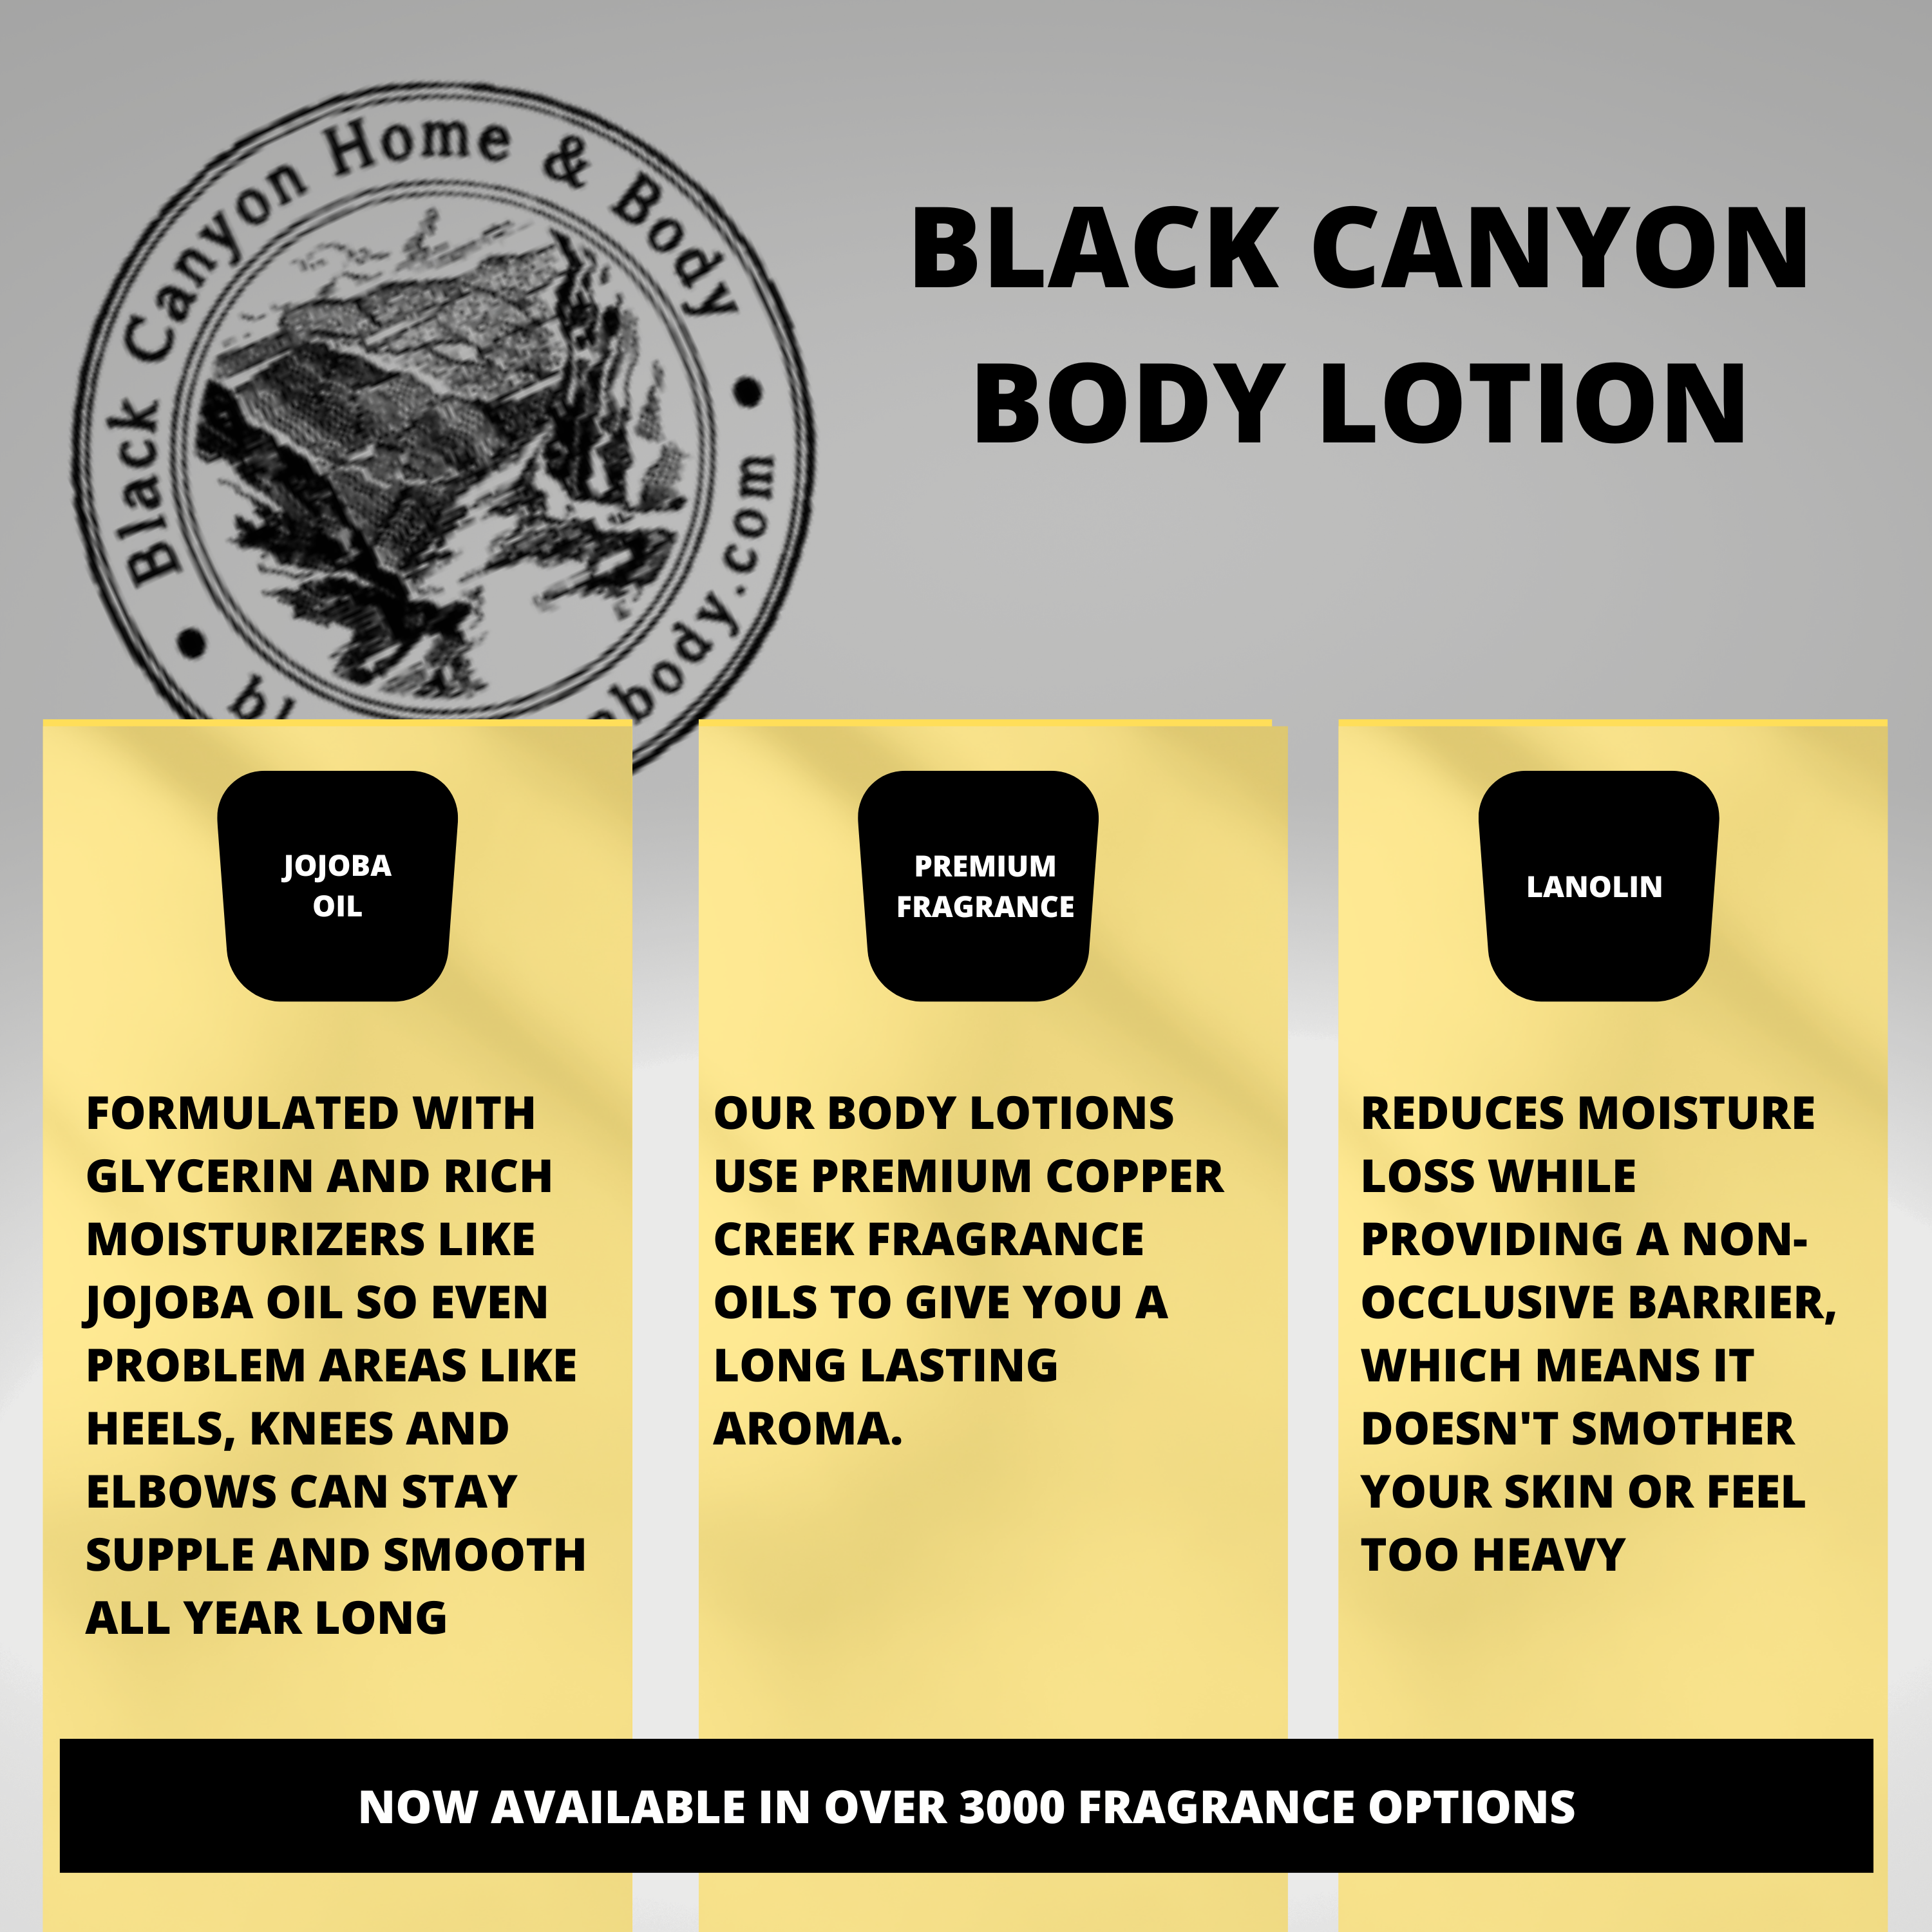 Black Canyon Bergamot Jasmine & Carnation Scented Luxury Body Lotion with Lanolin and Jojoba Oil